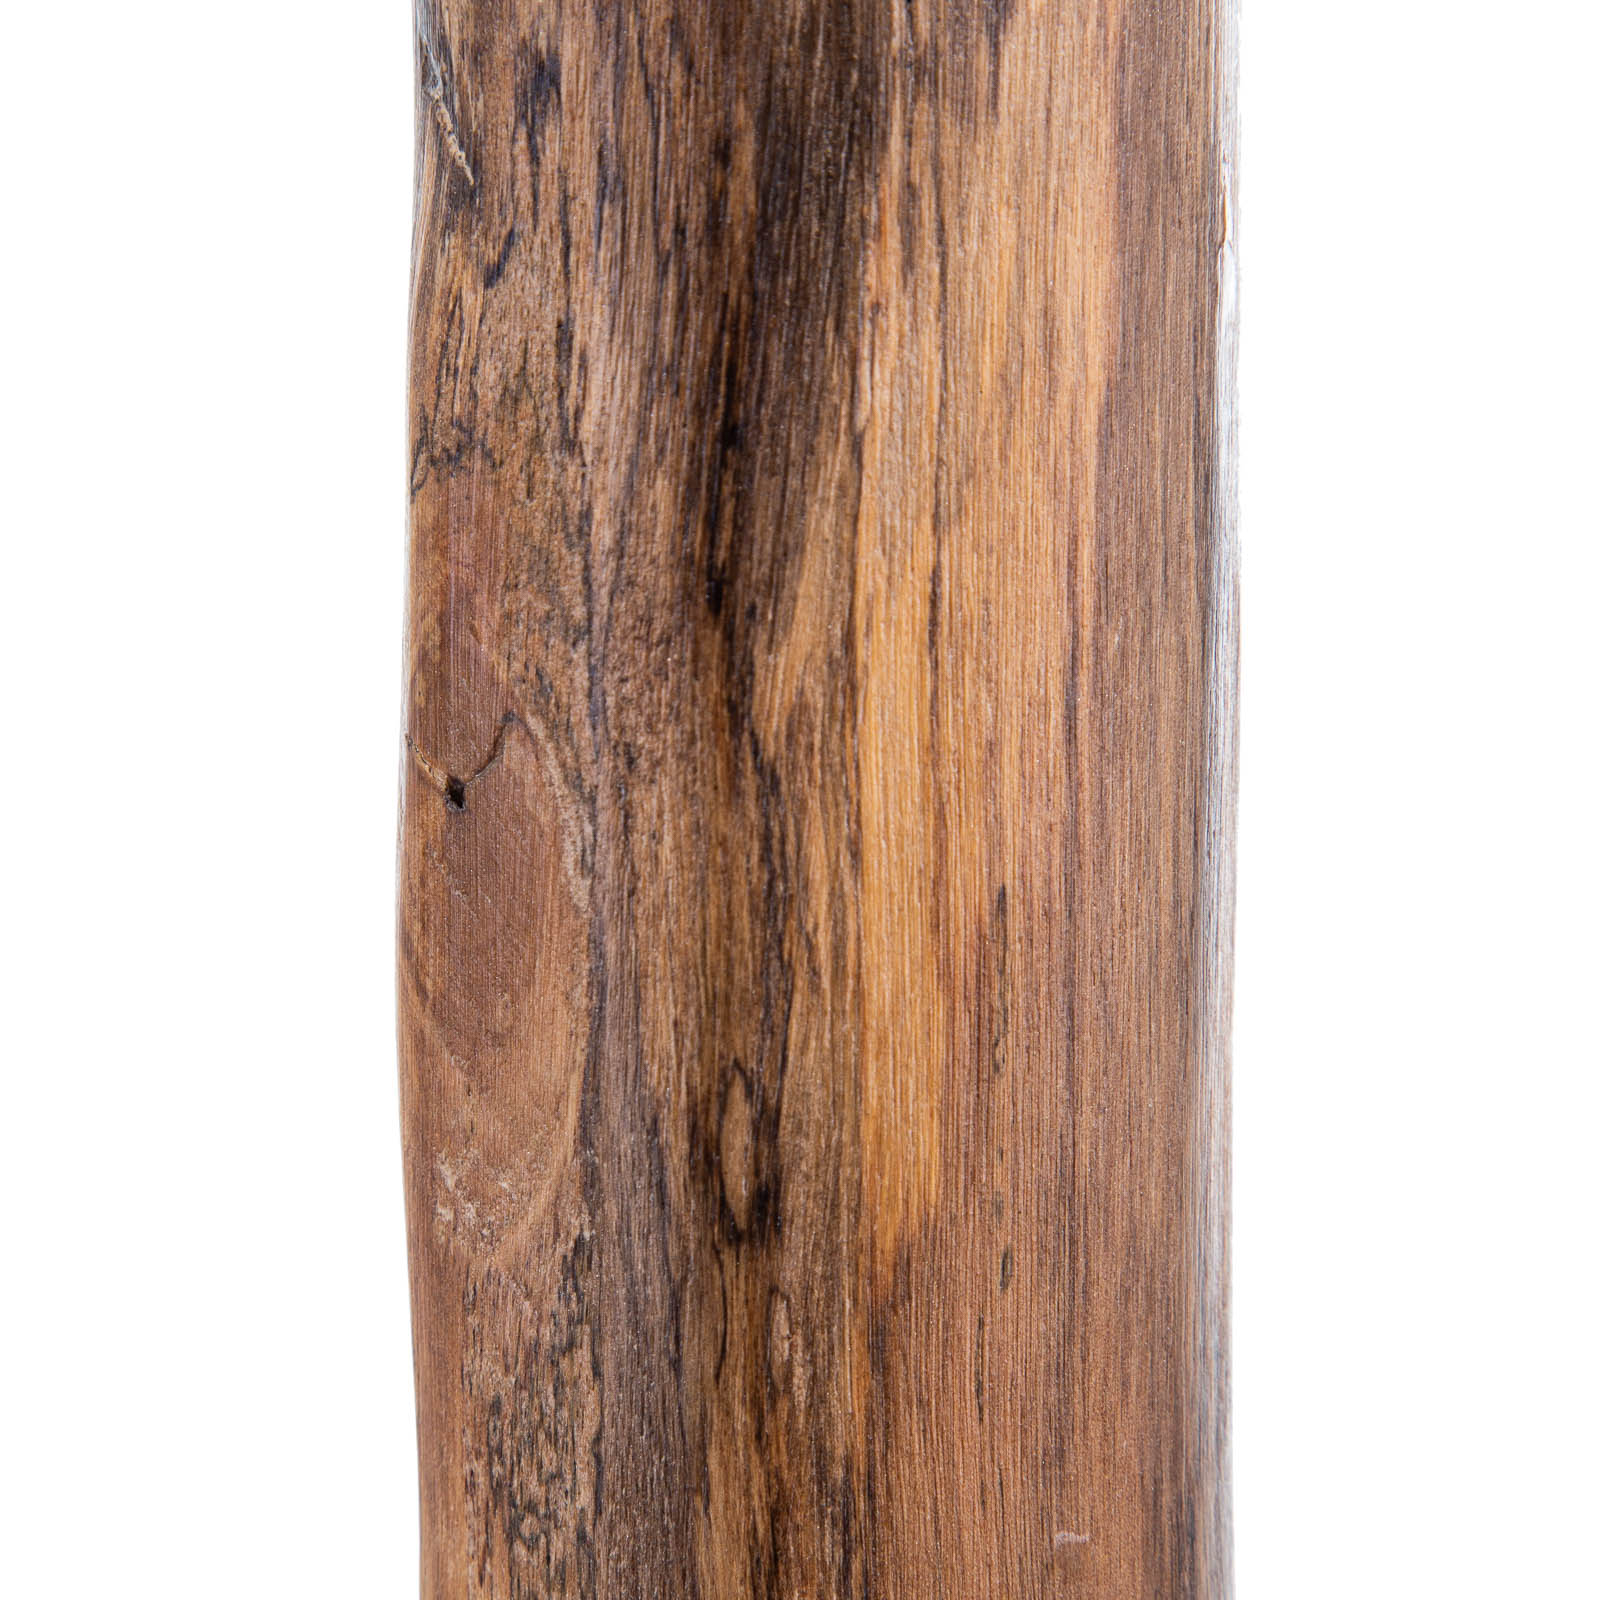 Norin vloerlamp met eucalyptushouten frame